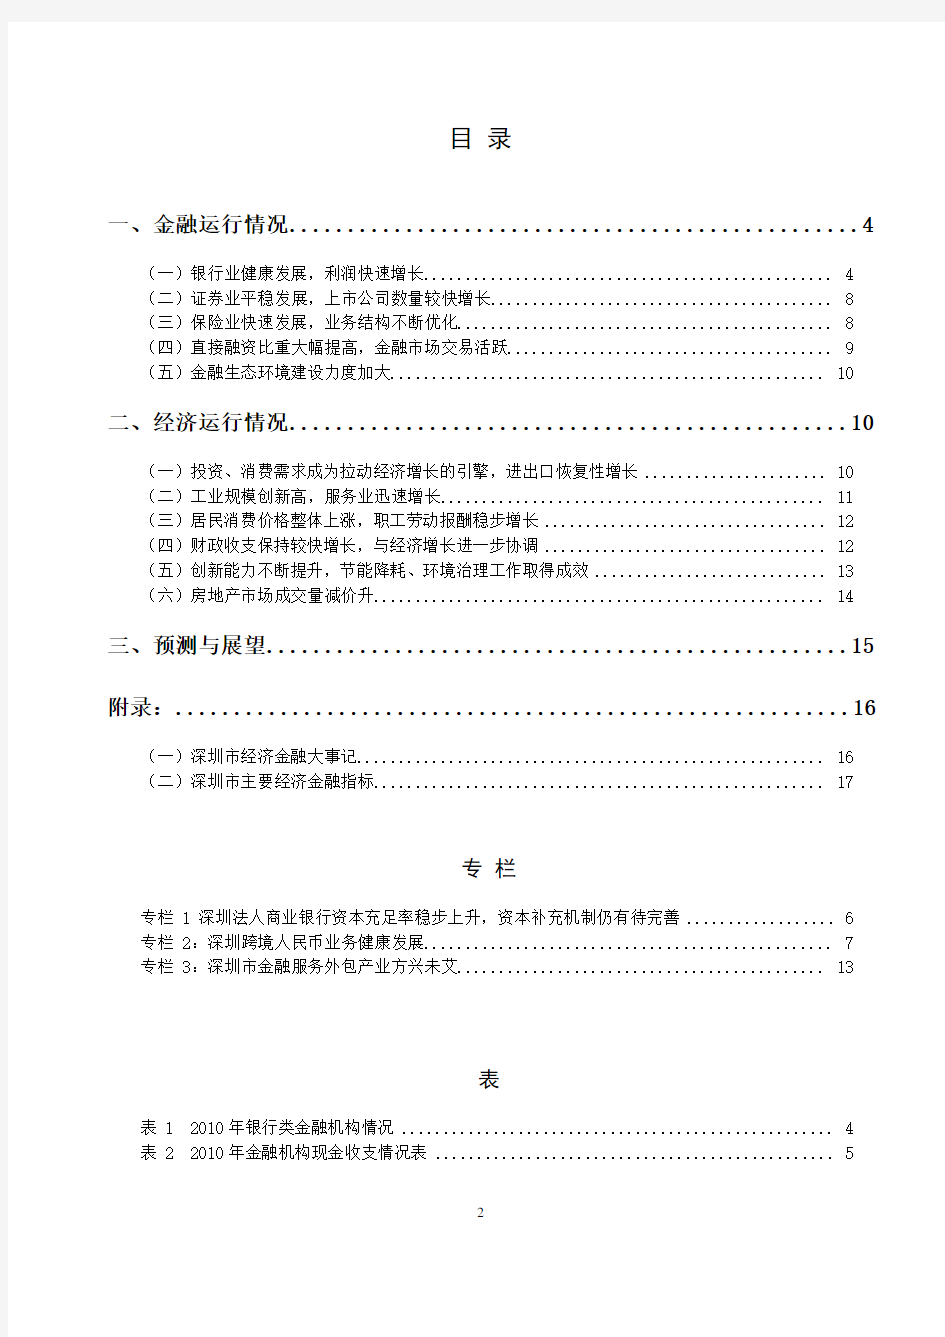 2010年深圳市金融运行报告